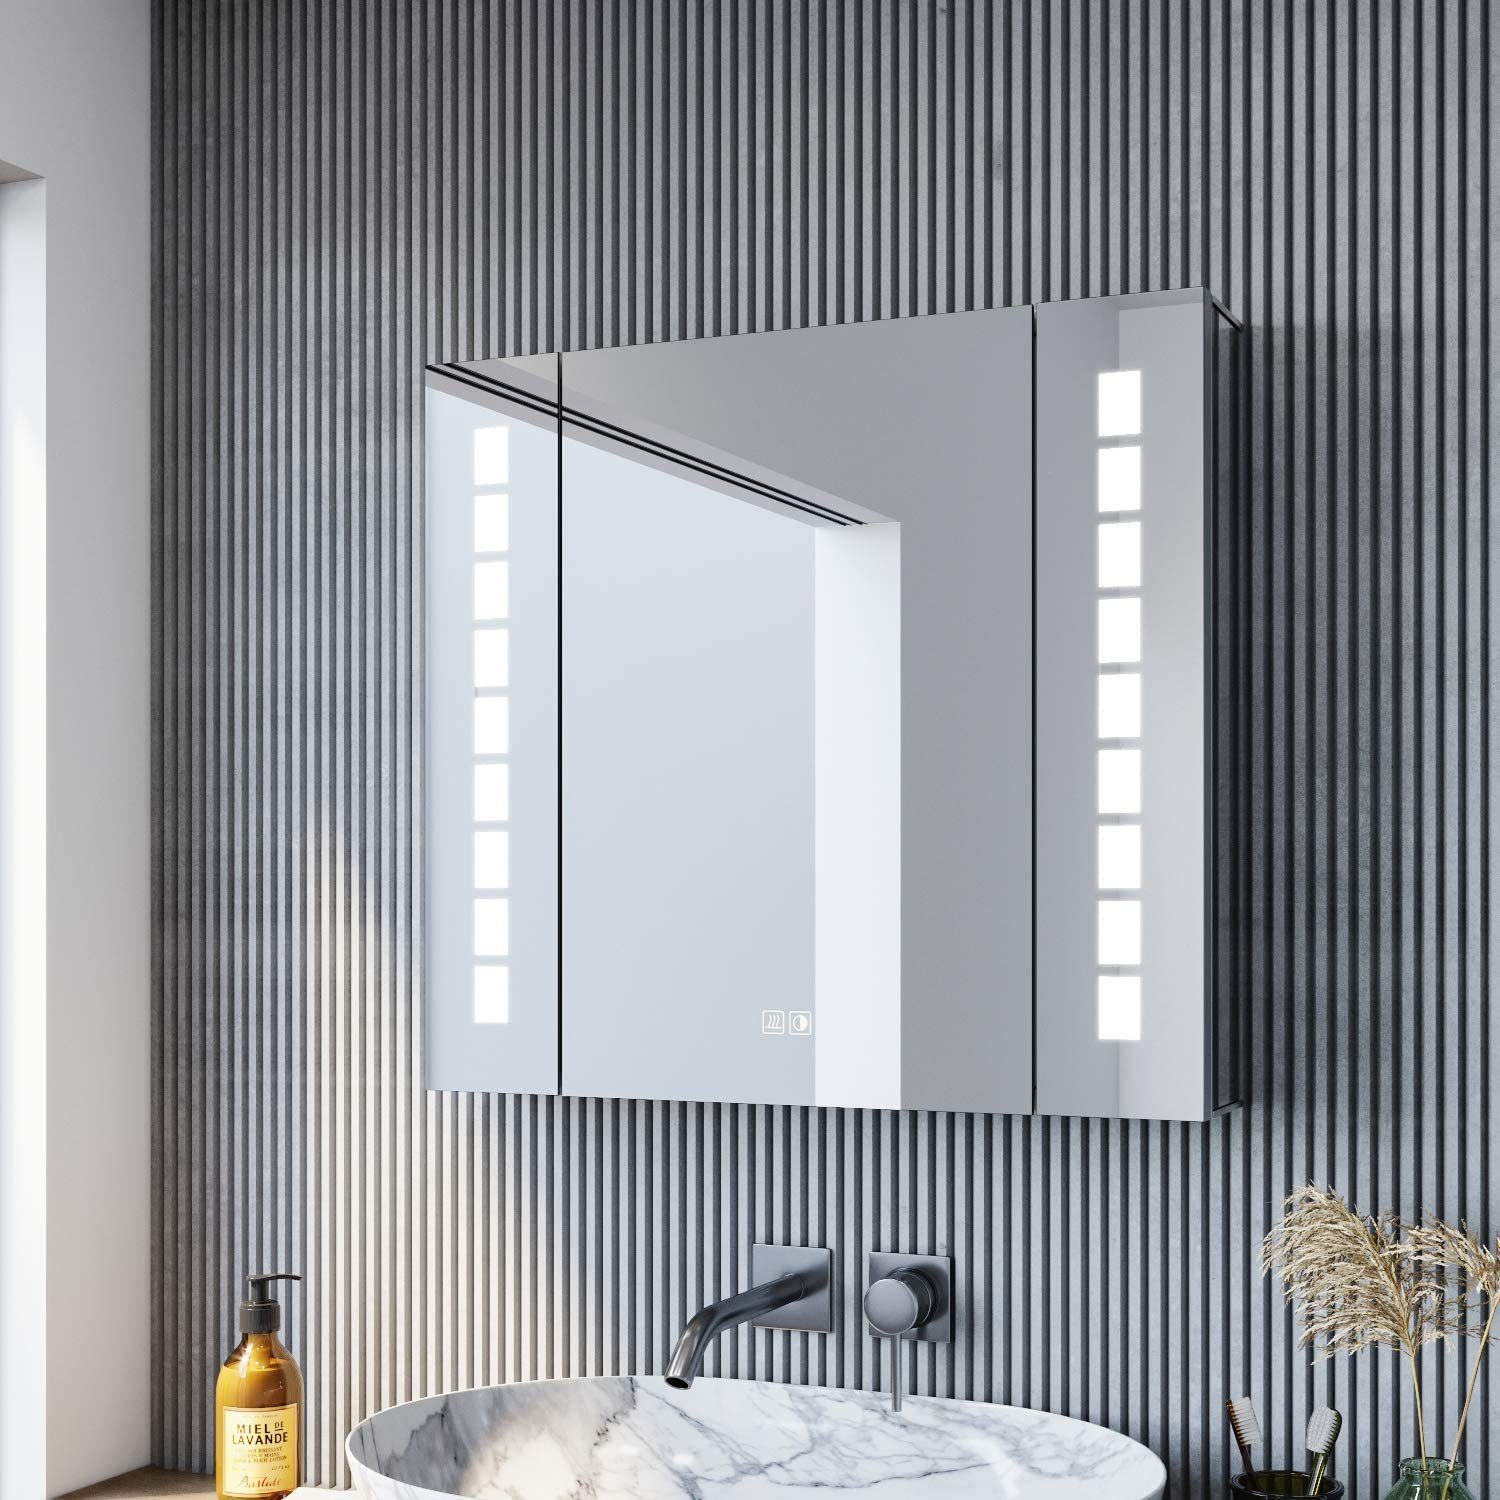 SONNI Spiegelschrank »Spiegelschrank Bad mit LED Beleuchtung 60×65cm  Aluminium mit Steckdose Beschlagfrei Touch« online kaufen | OTTO